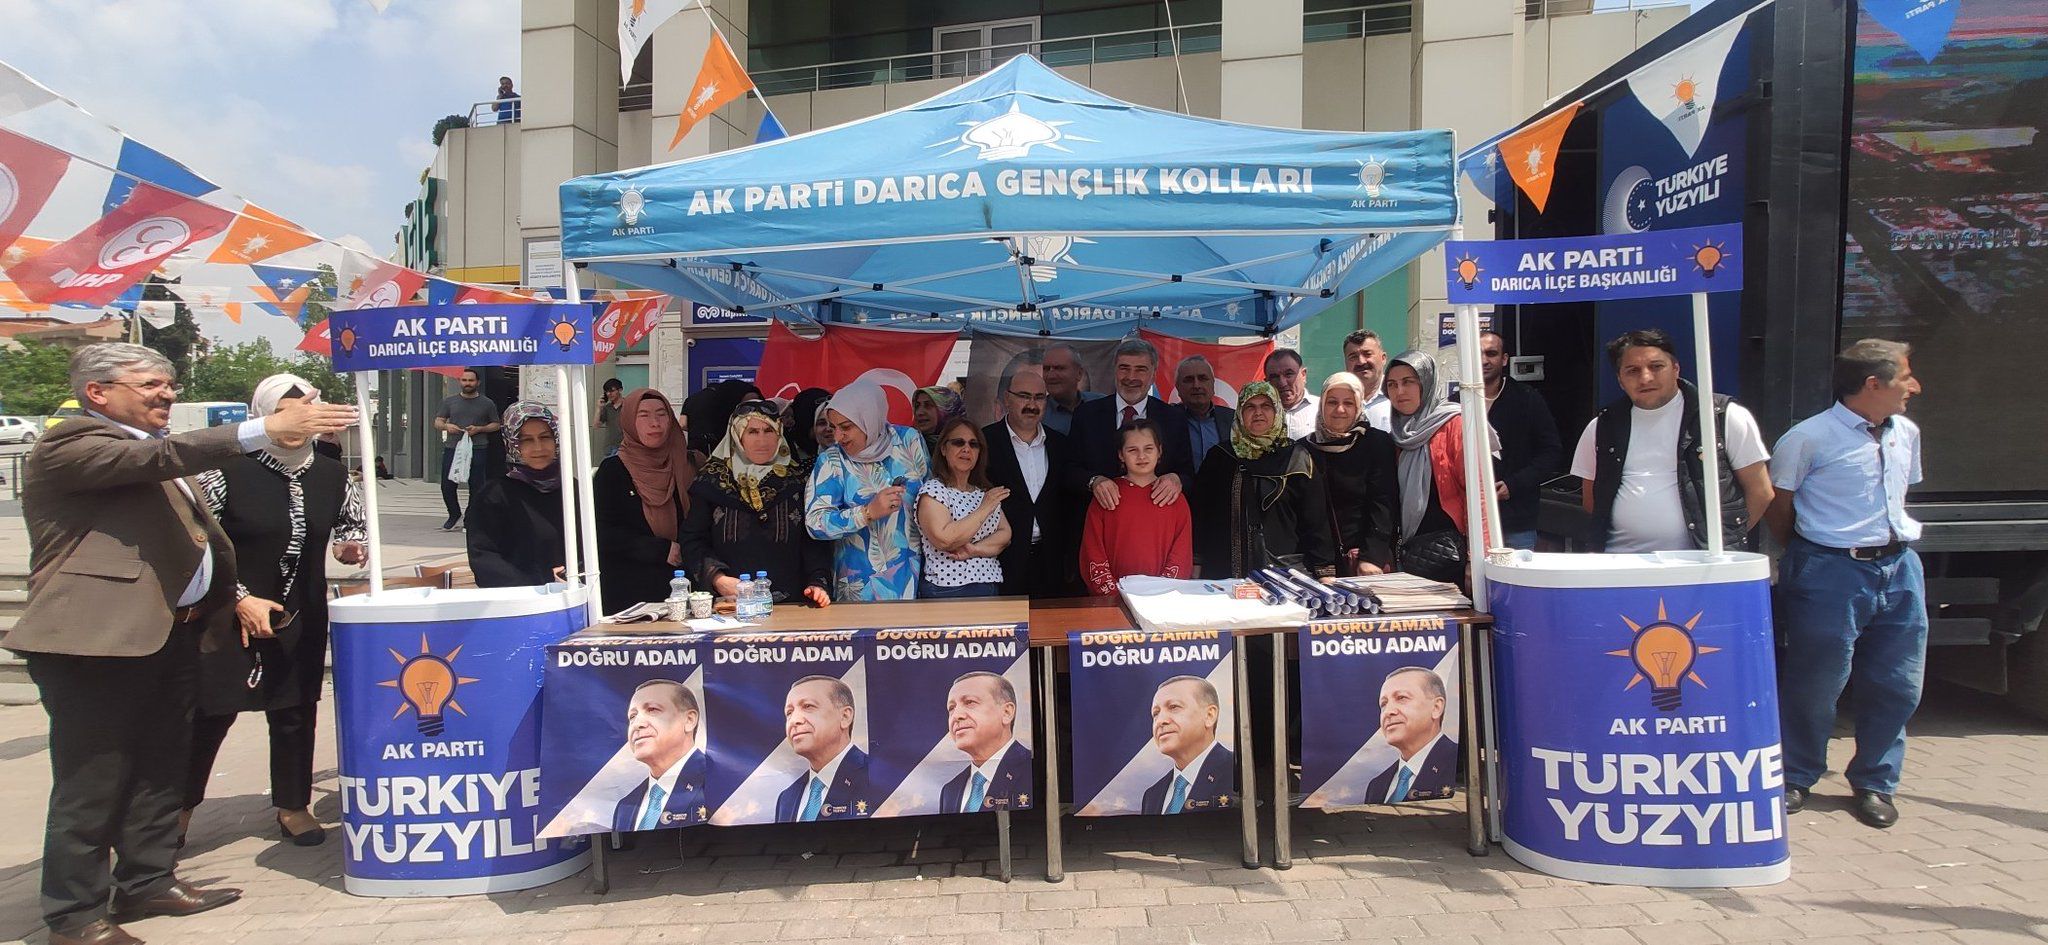 Milletvekili Çakır, “Erdoğan’a güçlü bir destek verelim”